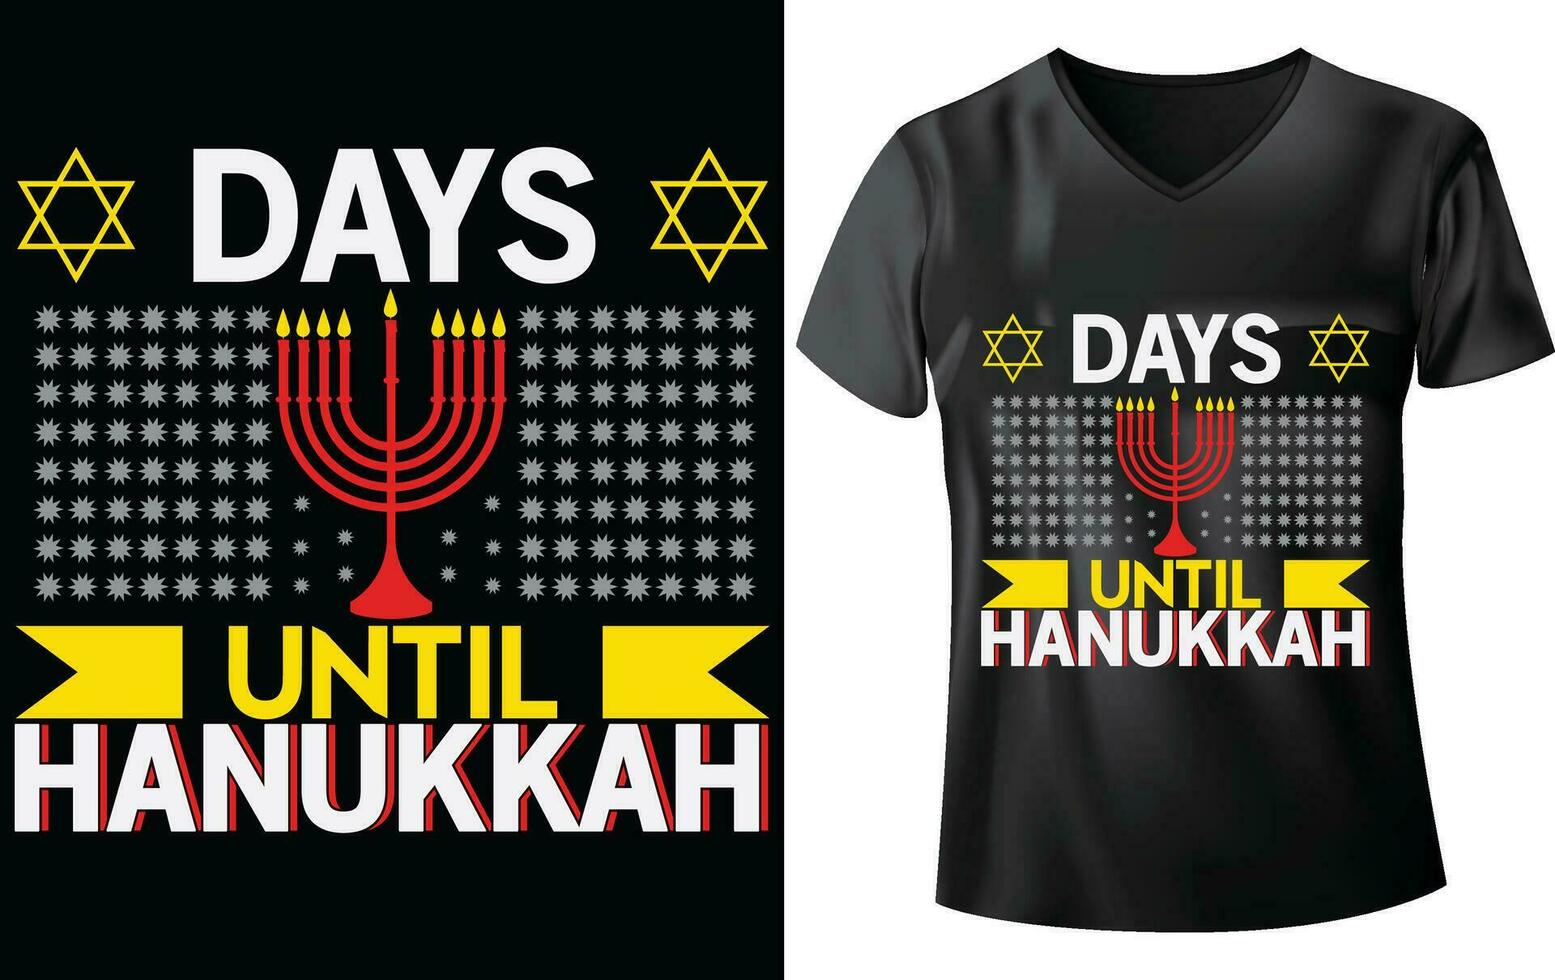 hanukkah dag t-shirt design vektor